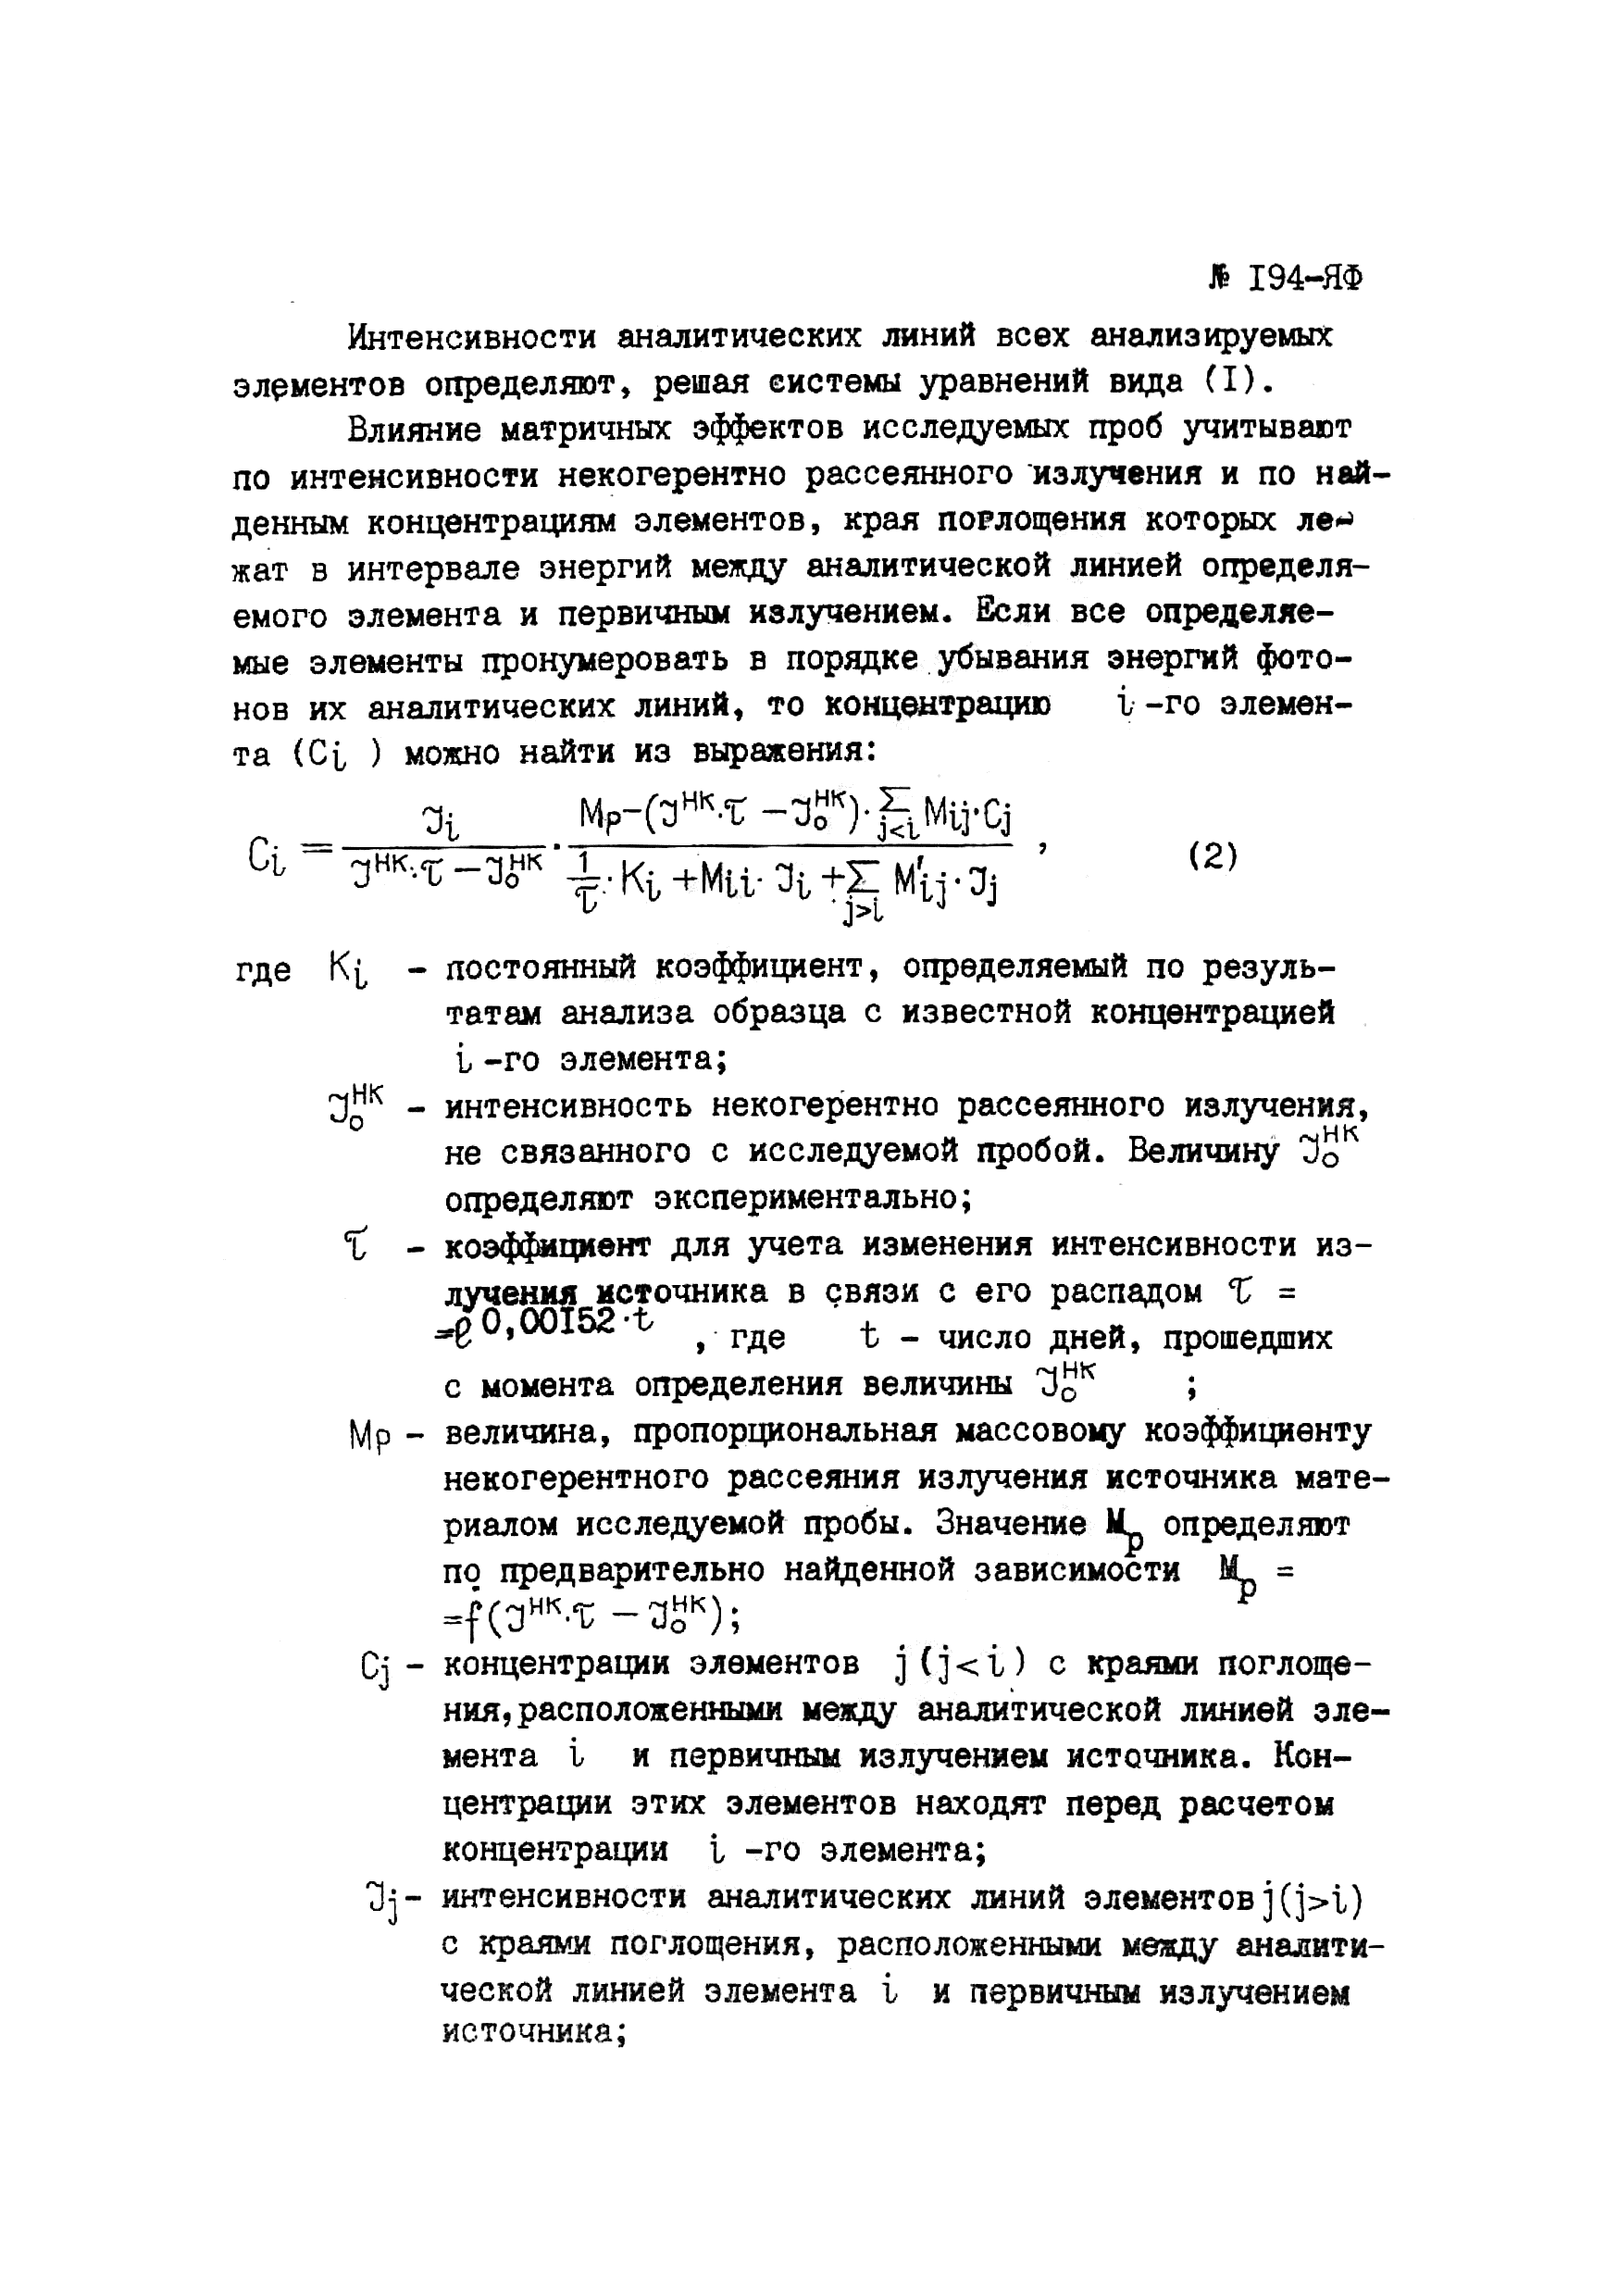 Инструкция НСАМ 194-ЯФ